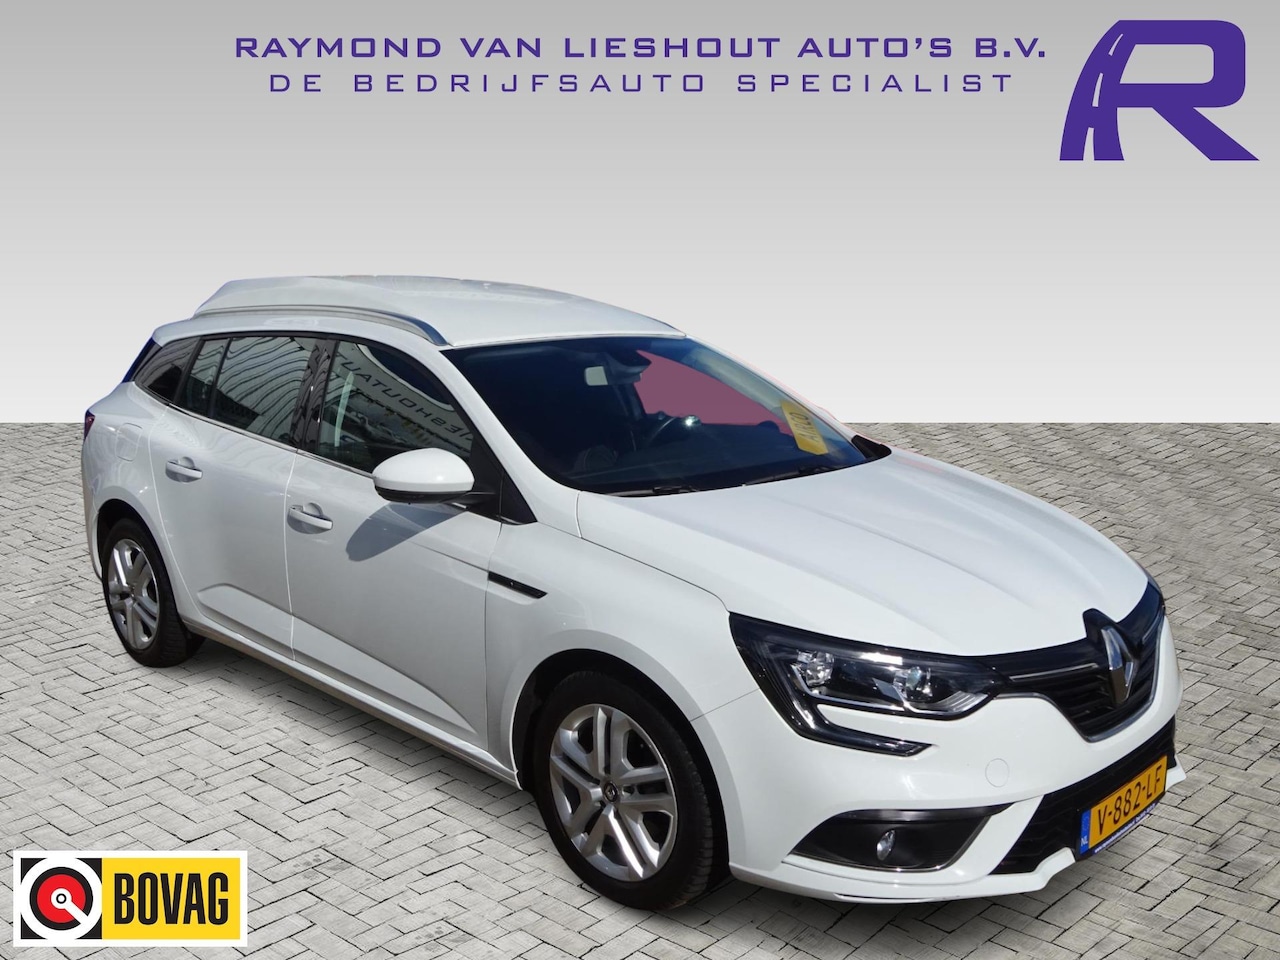 ziek Streng Leugen Renault Mégane 1.5 DCI VAN Energy 110 PK NAVI CRUISE PDC 2018 Diesel -  Occasion te koop op AutoWereld.nl